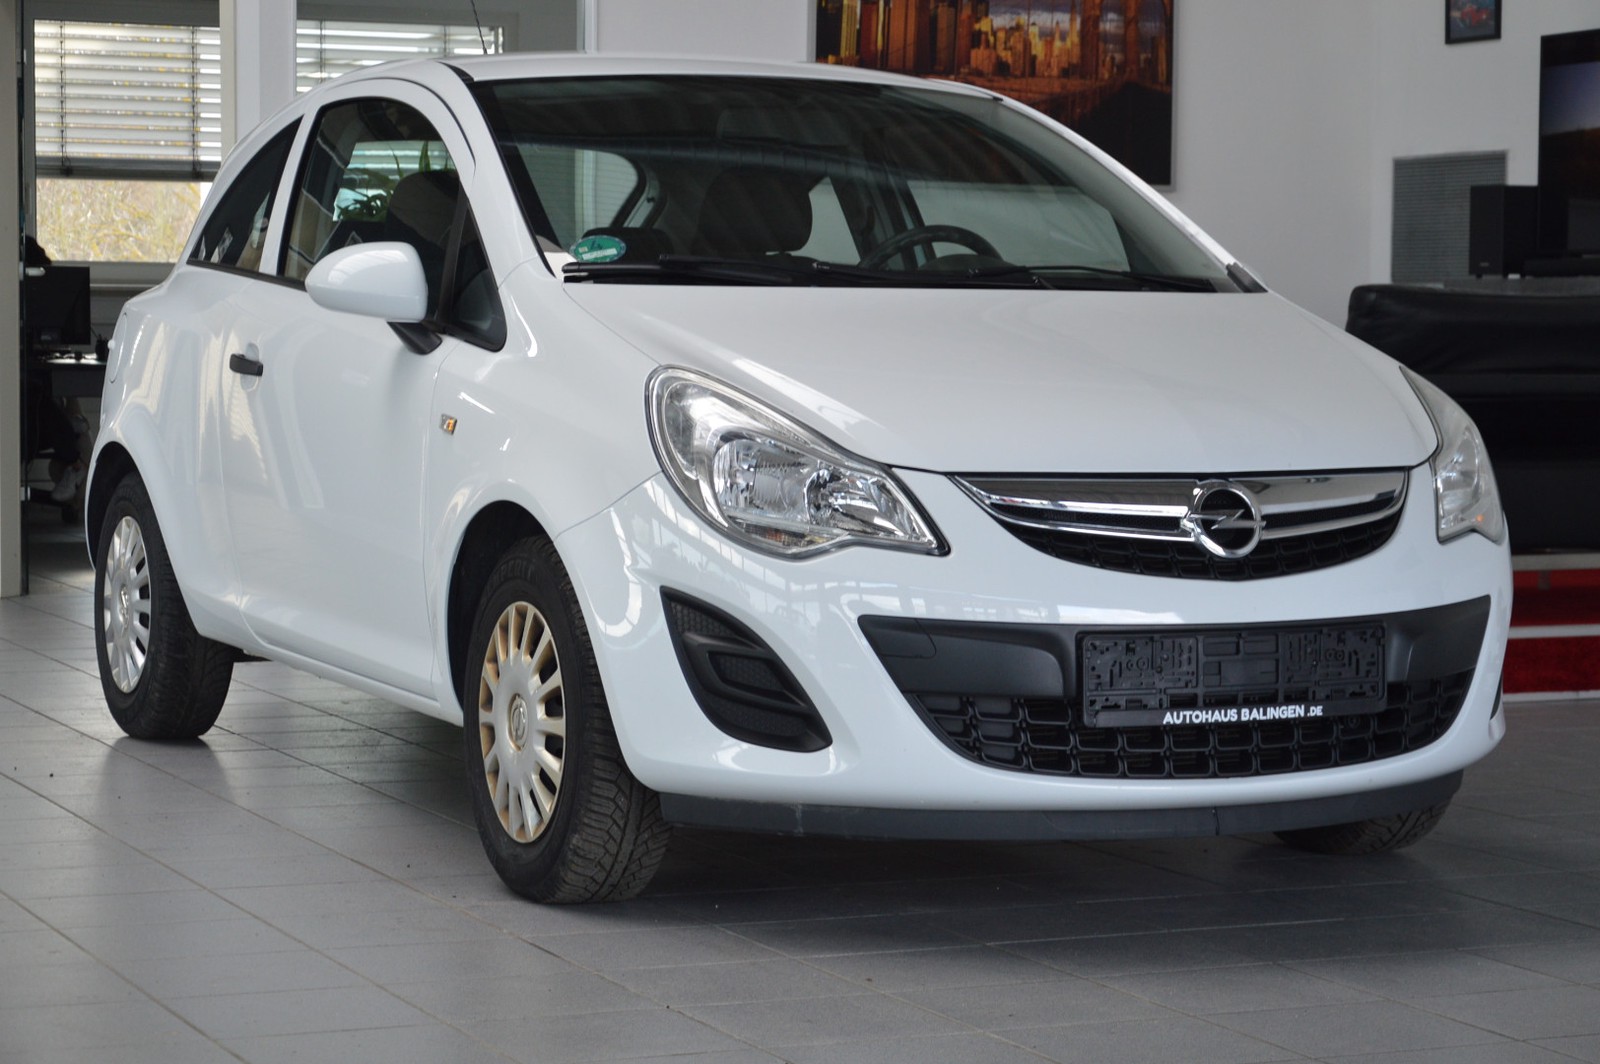 Opel Corsa D Selection gebraucht kaufen in Balingen Preis 4990 eur -  Int.Nr.: 1436 VERKAUFT